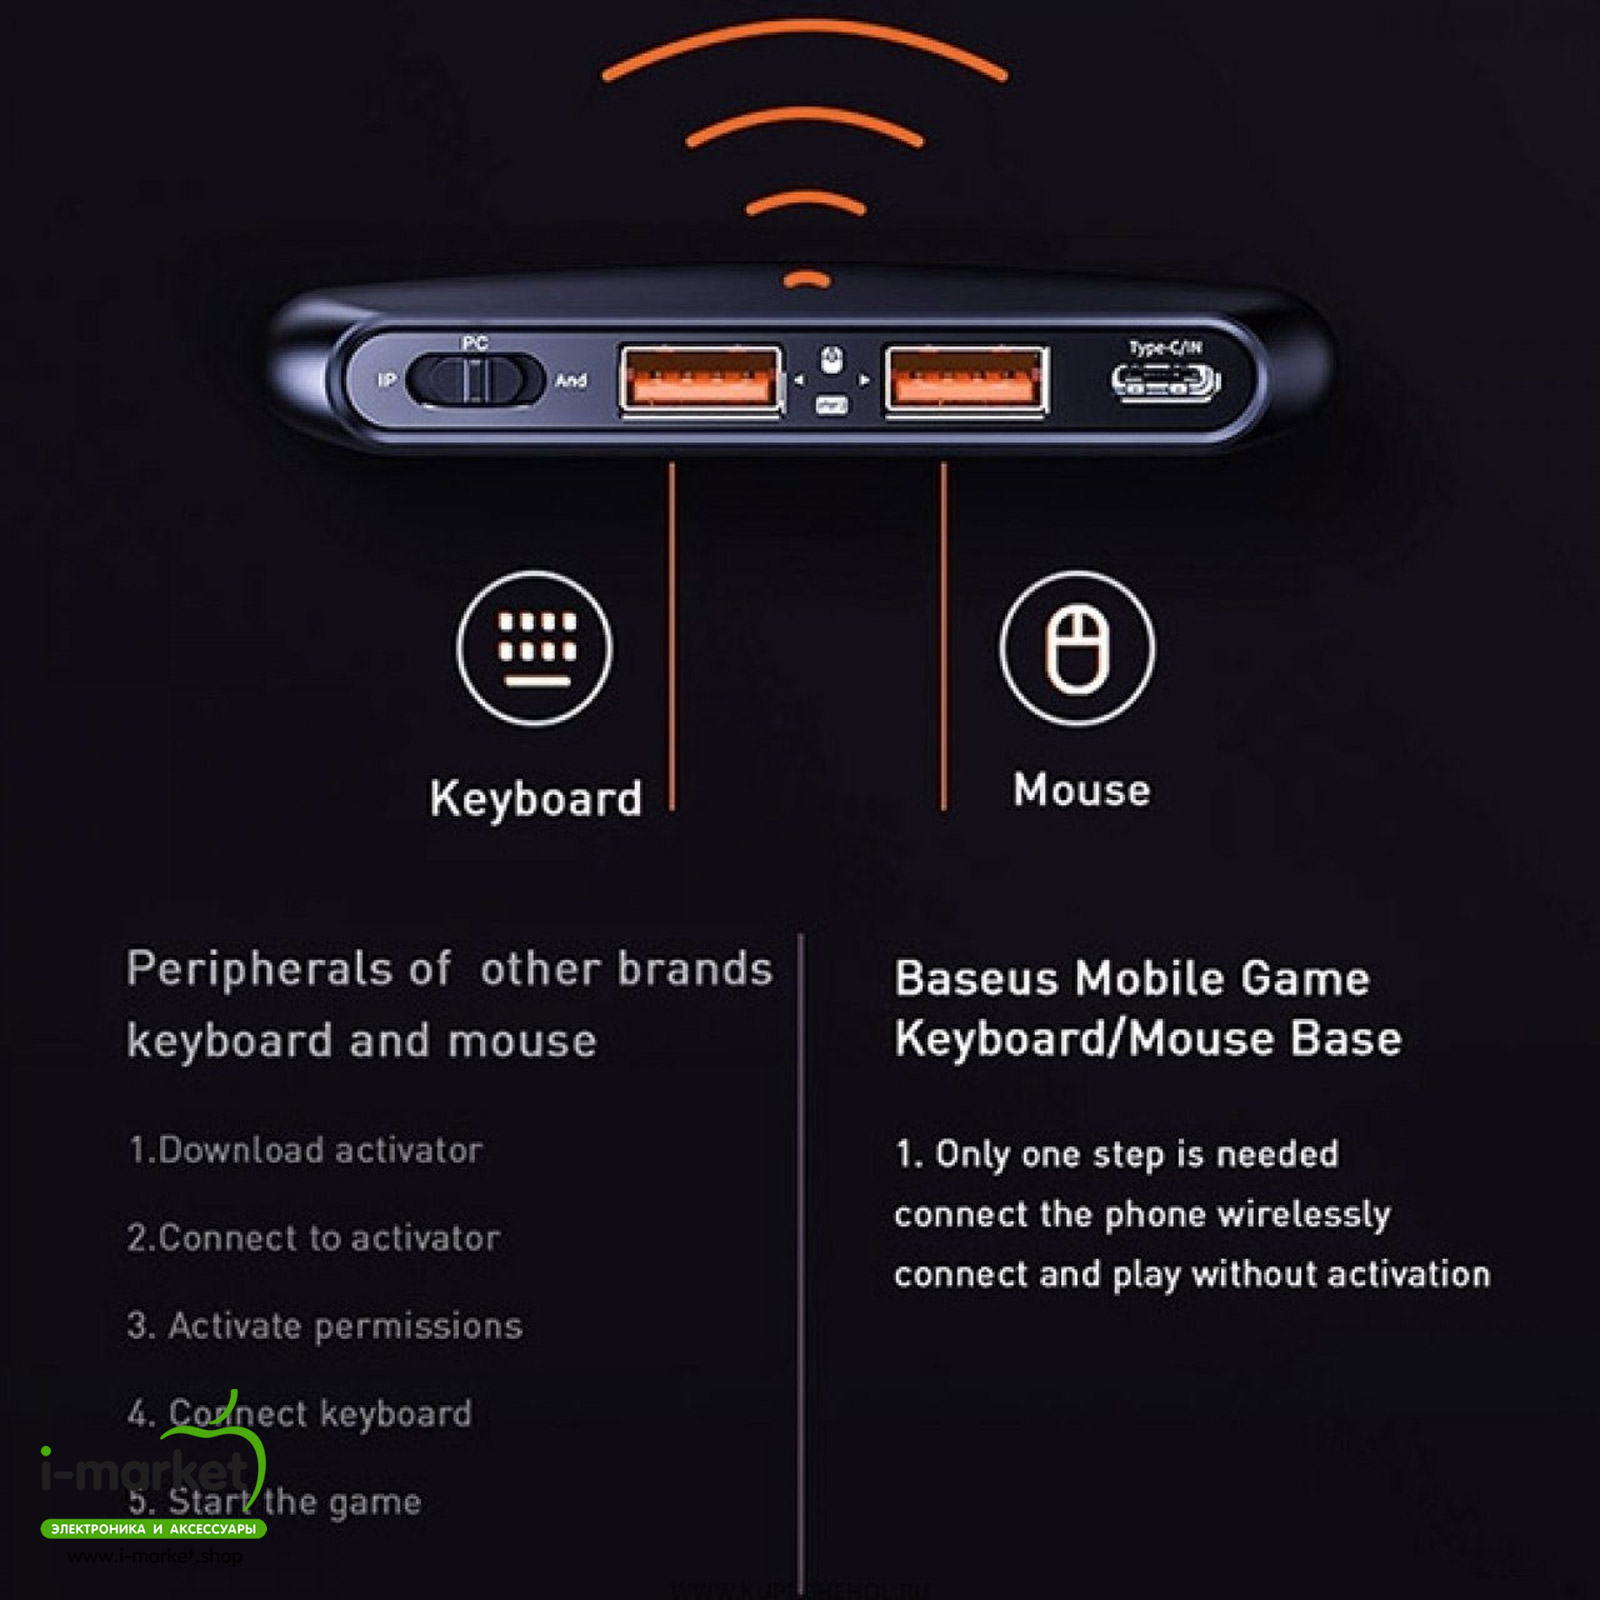 Адаптер для клавиатуры и мыши Baseus Gamo Mobile Game два порта USB, HUB GA01, цвет черный